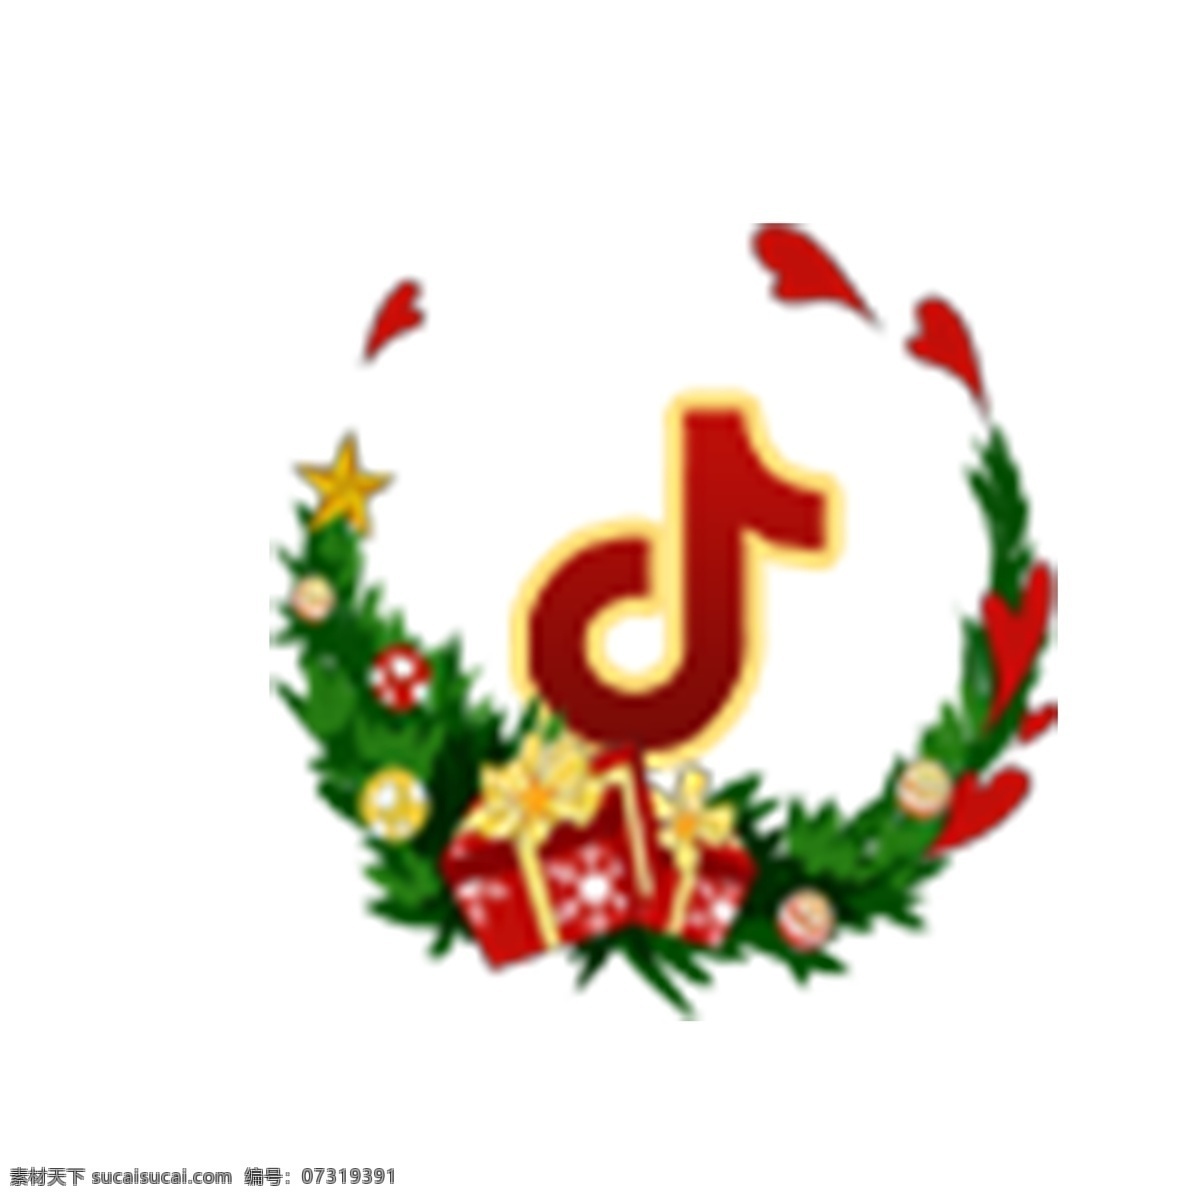 音乐图标 音乐播放器 圣诞图标 扁平化ui ui图标 手机图标 界面ui 网页ui h5图标